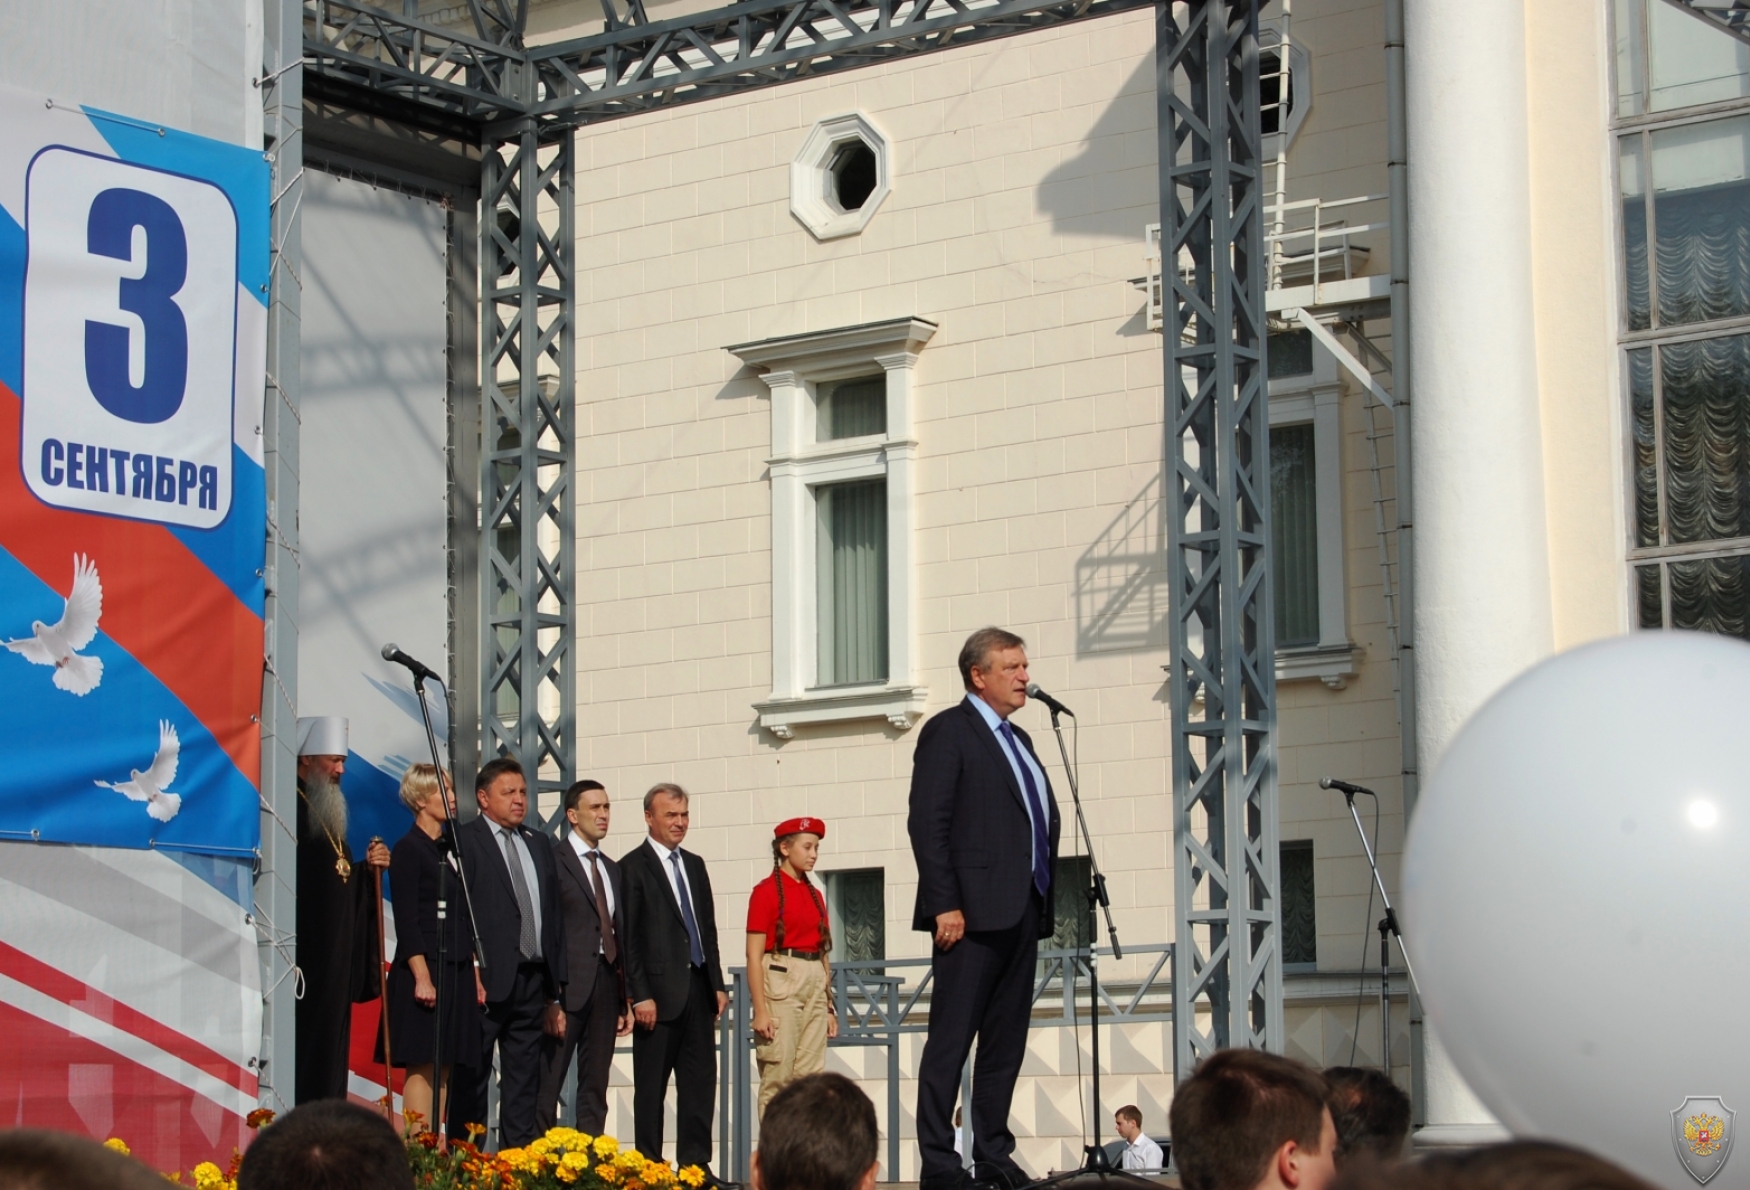 3 сентября в городе Кирове состоялось мероприятие, посвященное Дню солидарности в борьбе с терроризмом